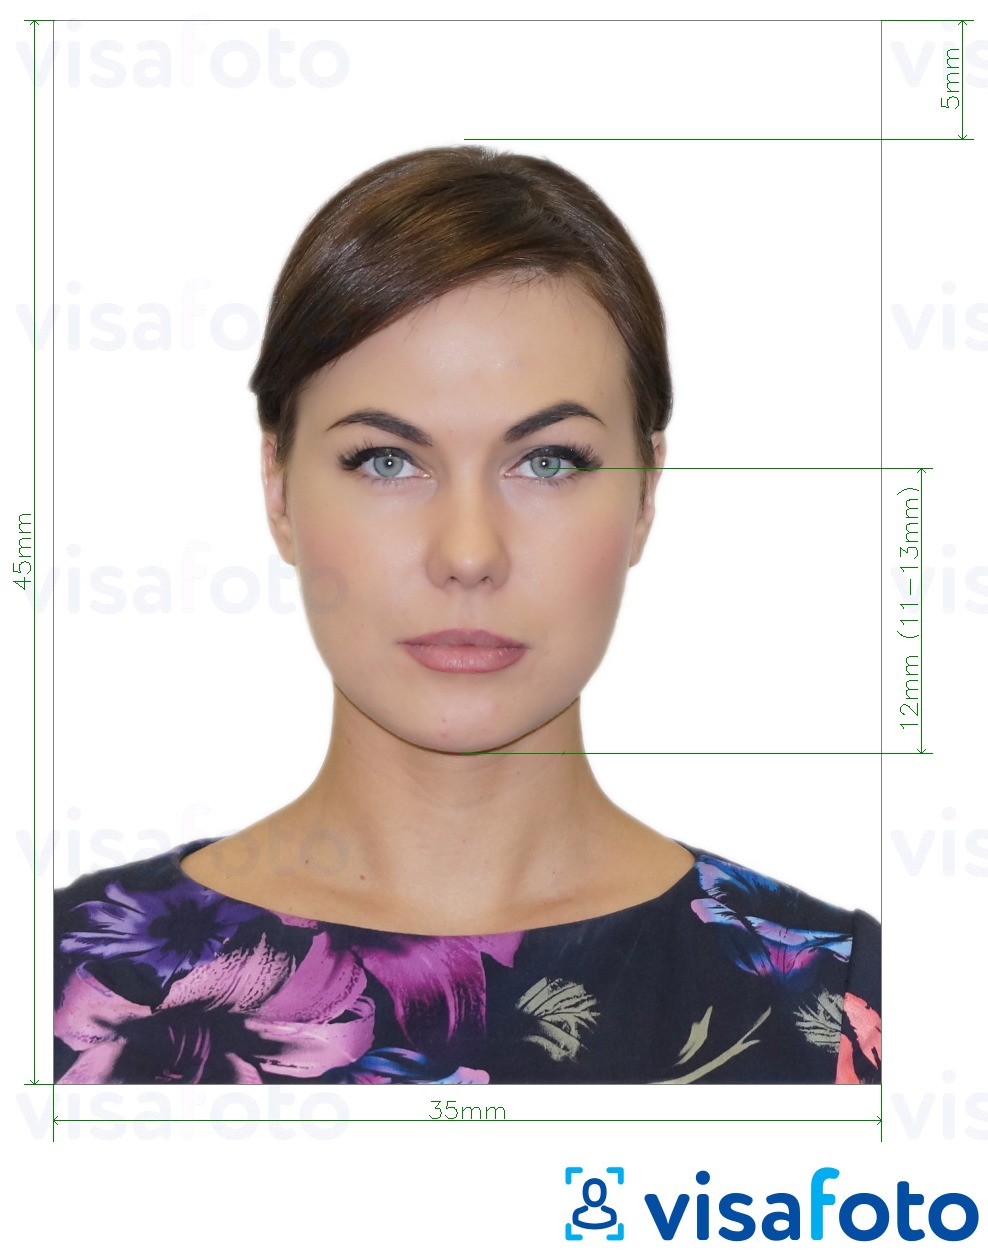 דוגמא לתמונה על רוסיה דרכון (העיניים לתחתית הסנטר 12 מ